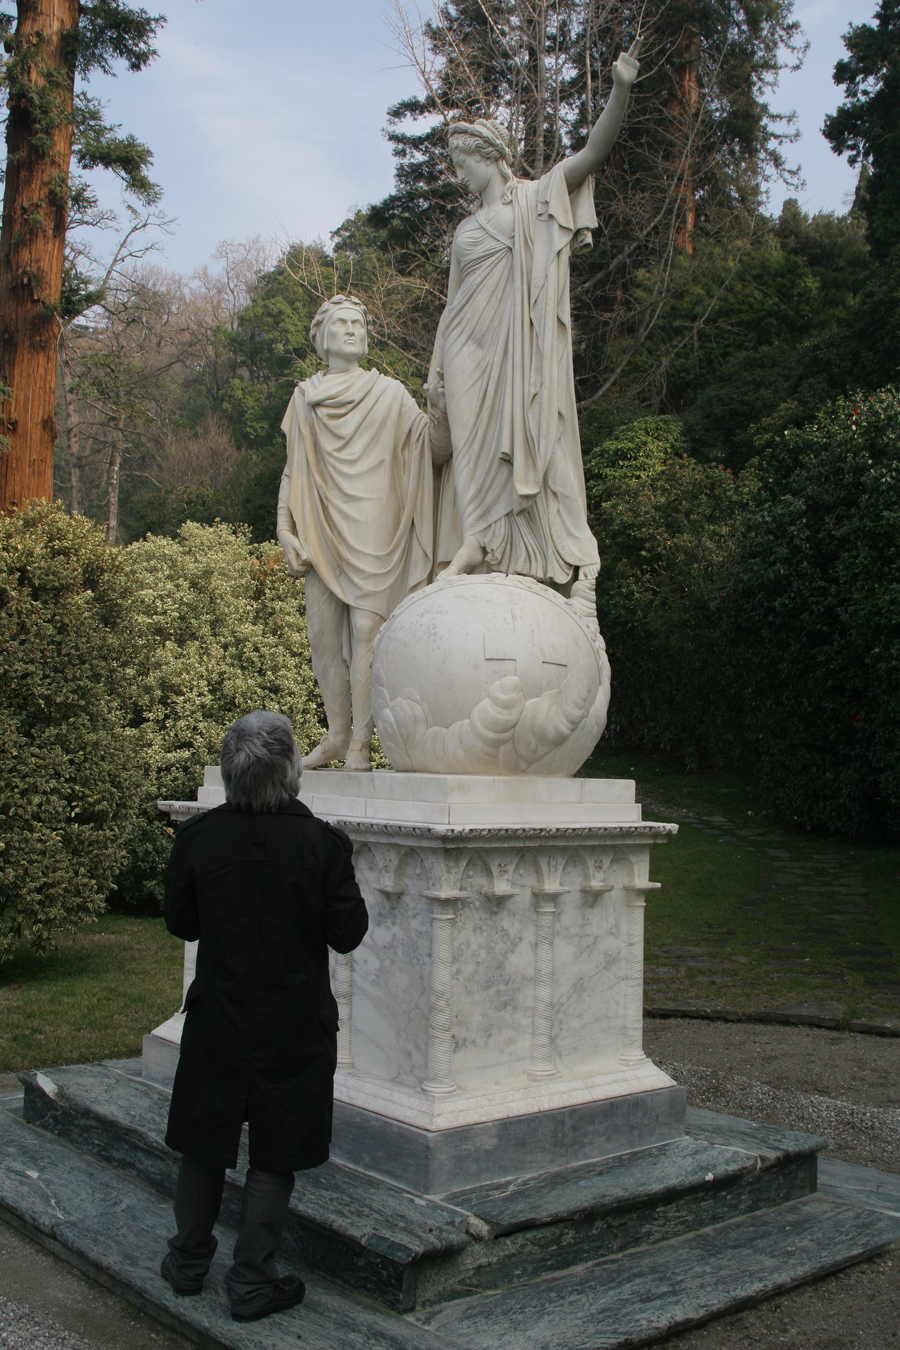 Boris Acosta before Dante and Beatrice's statue in Bellagio, Italy